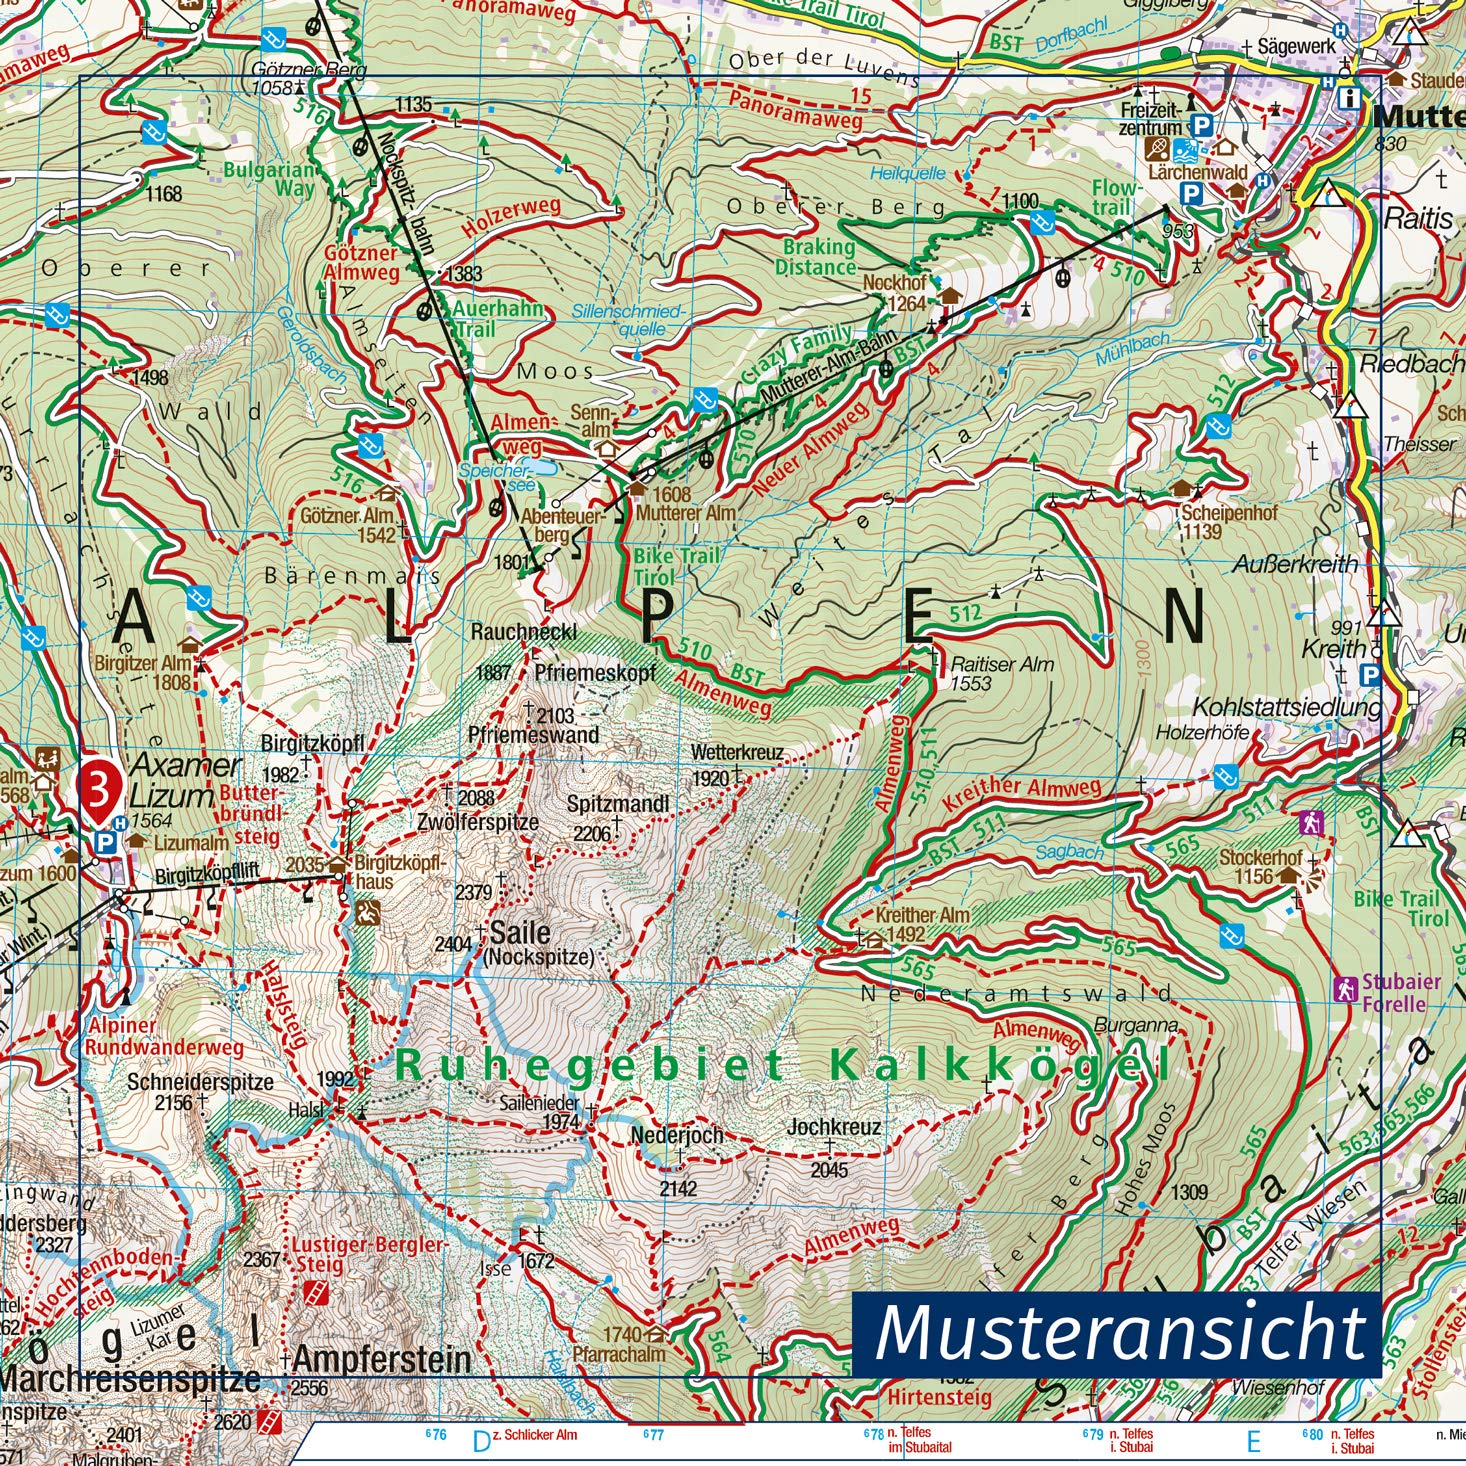 99 Oberengadin, Alta Engadina 1:40.000 - Kompass Wanderkarte